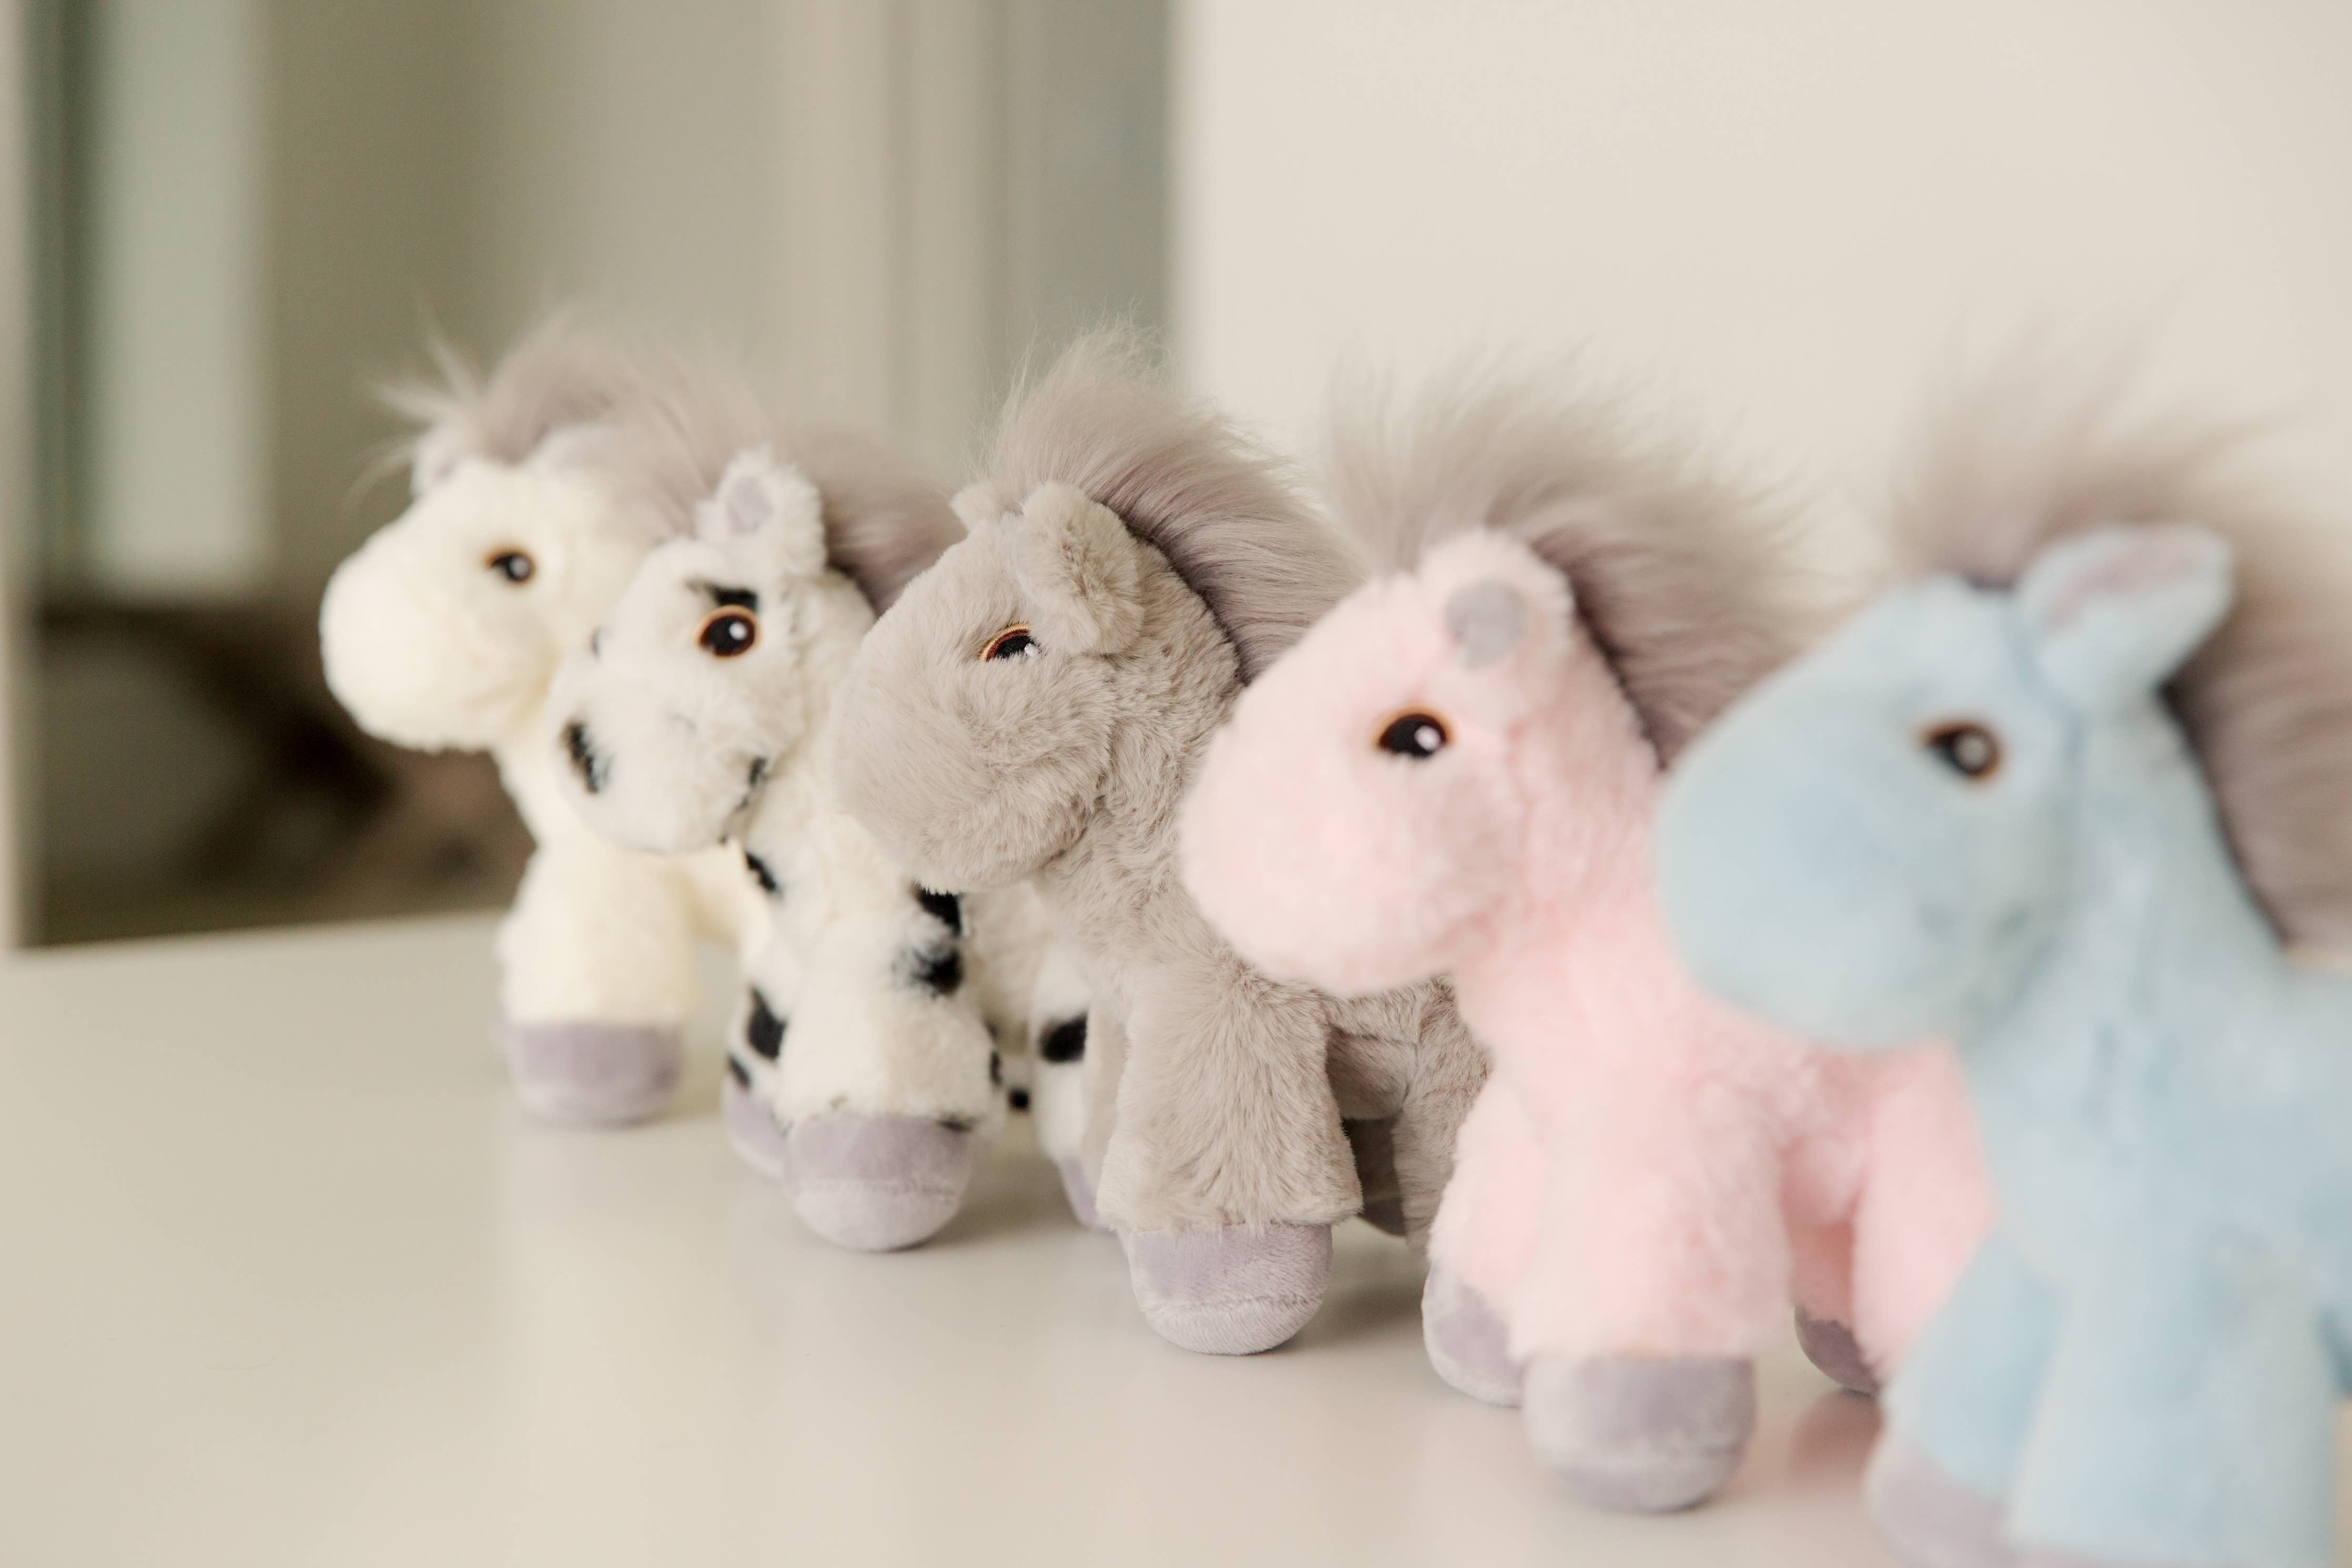 Piccoli Horses - MINI HORSE - Baby Bunch